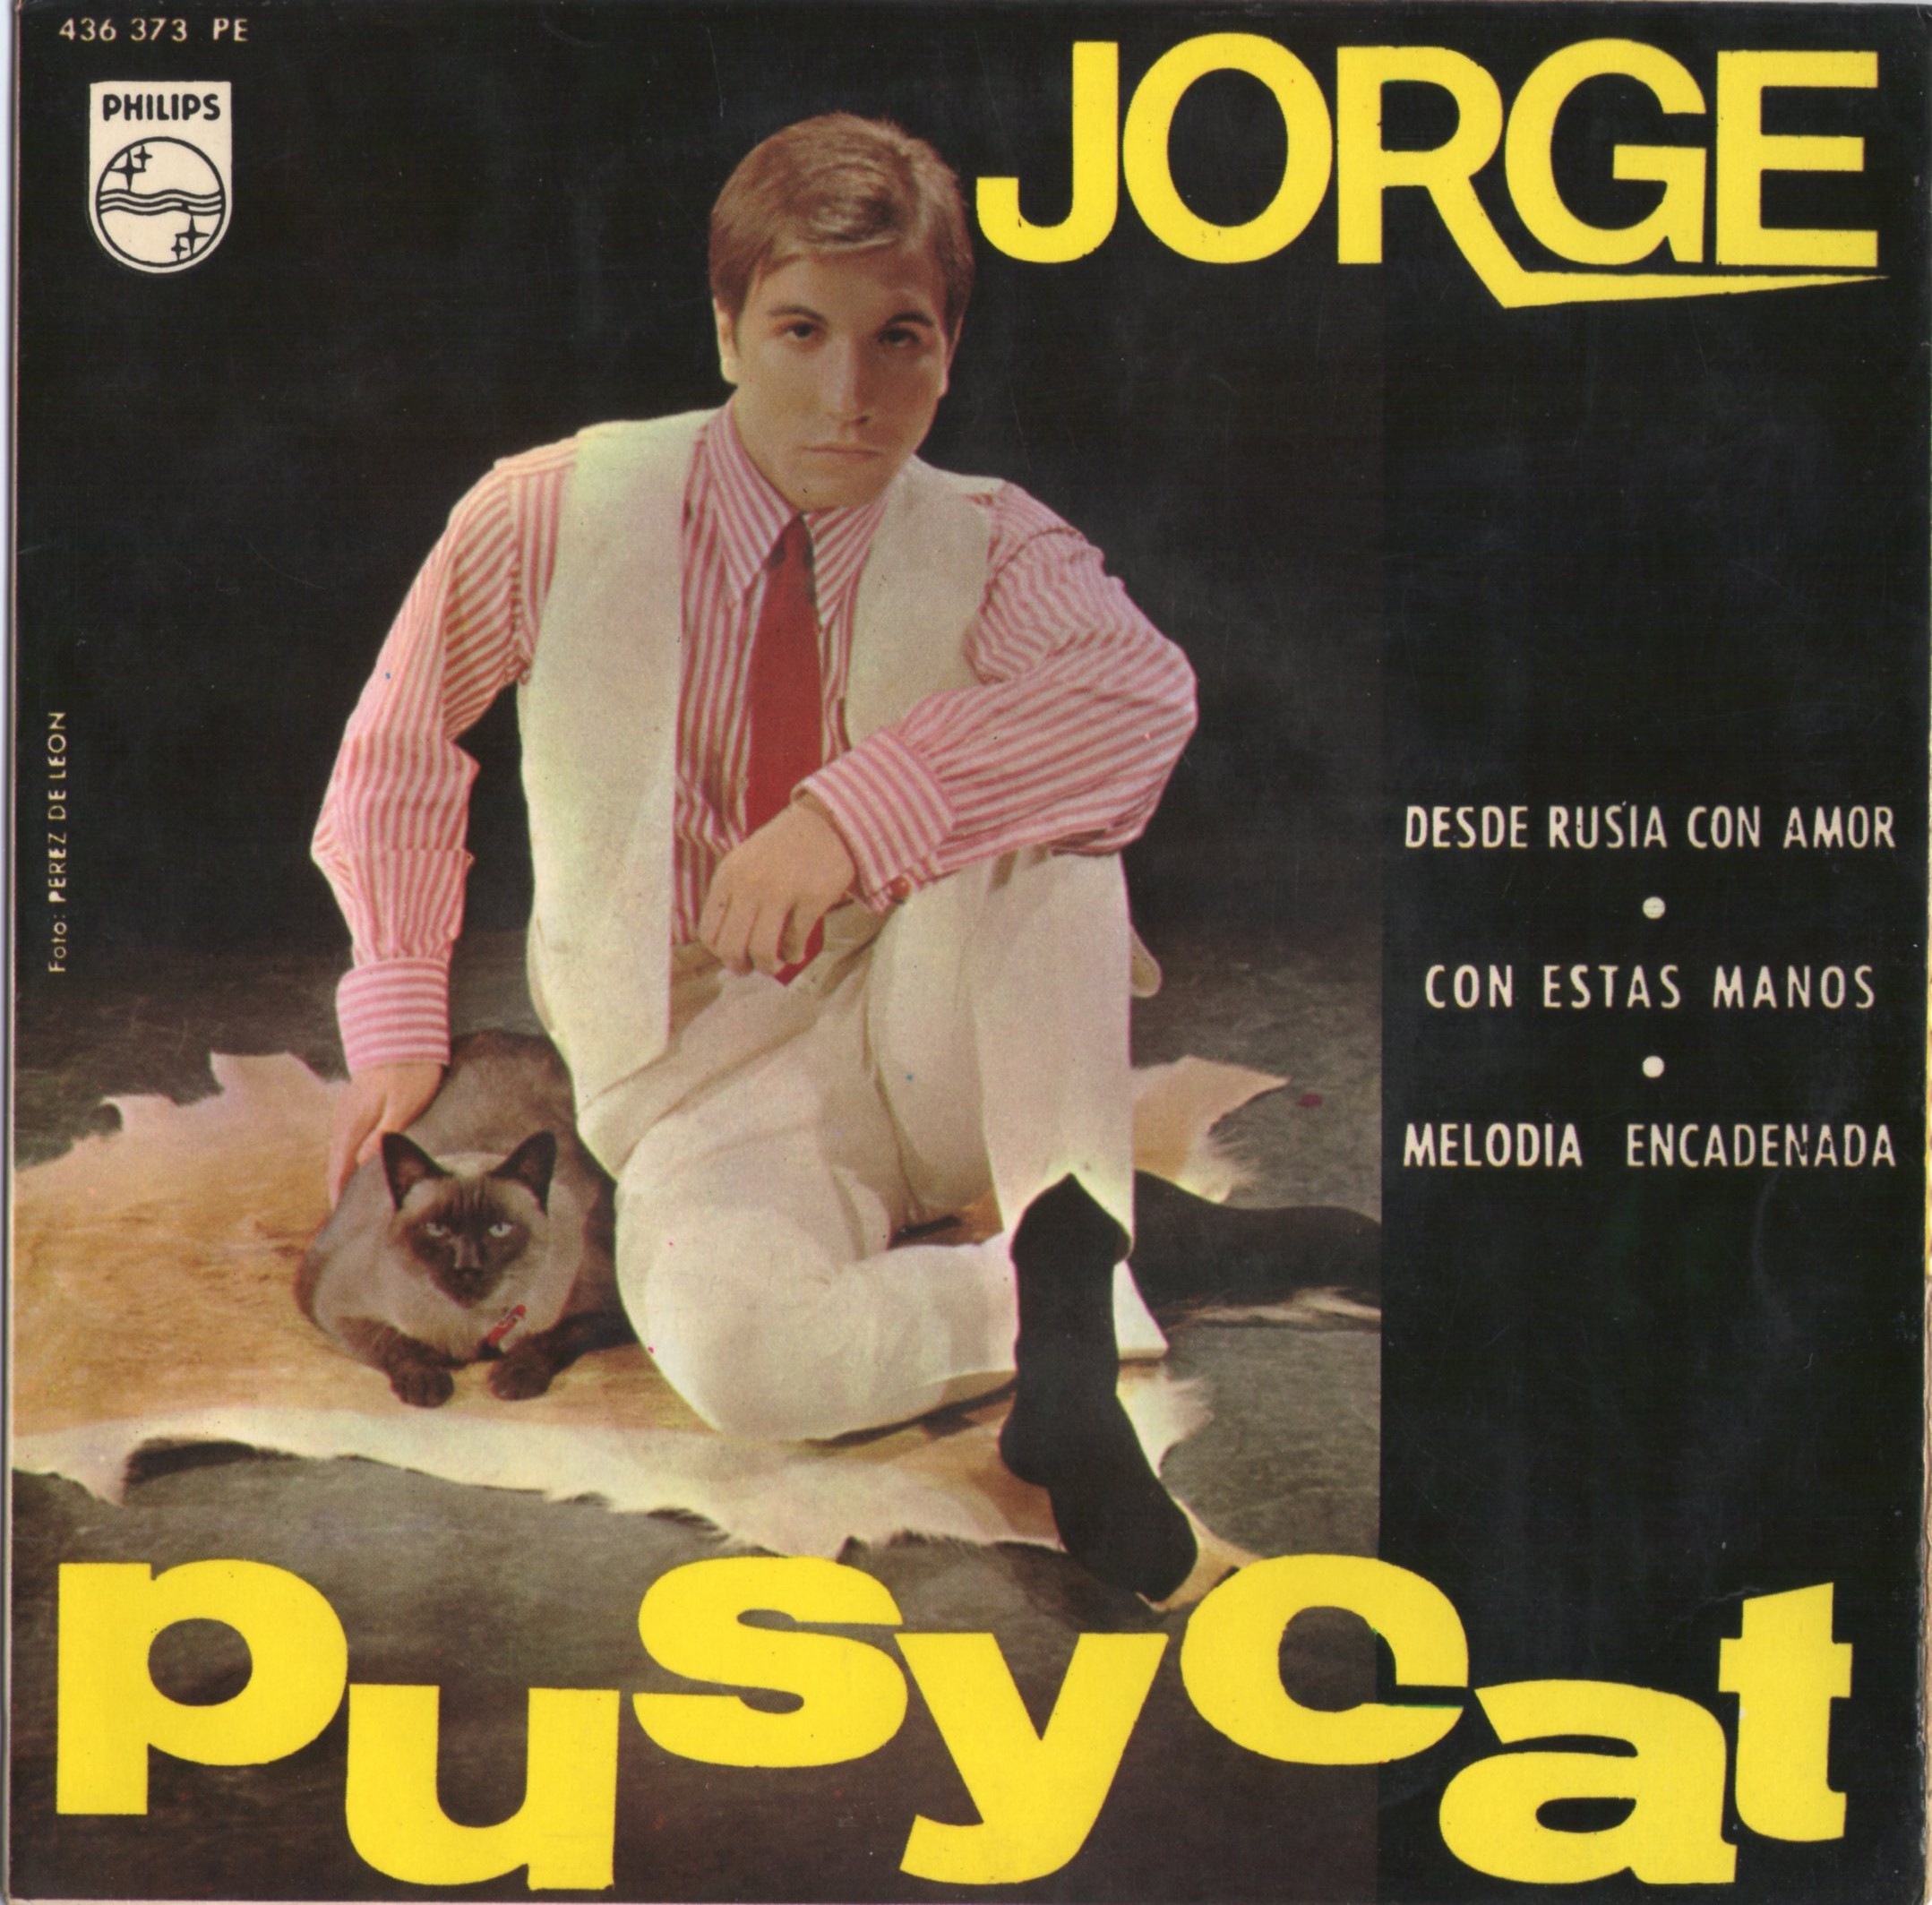 02 45 Jorge A